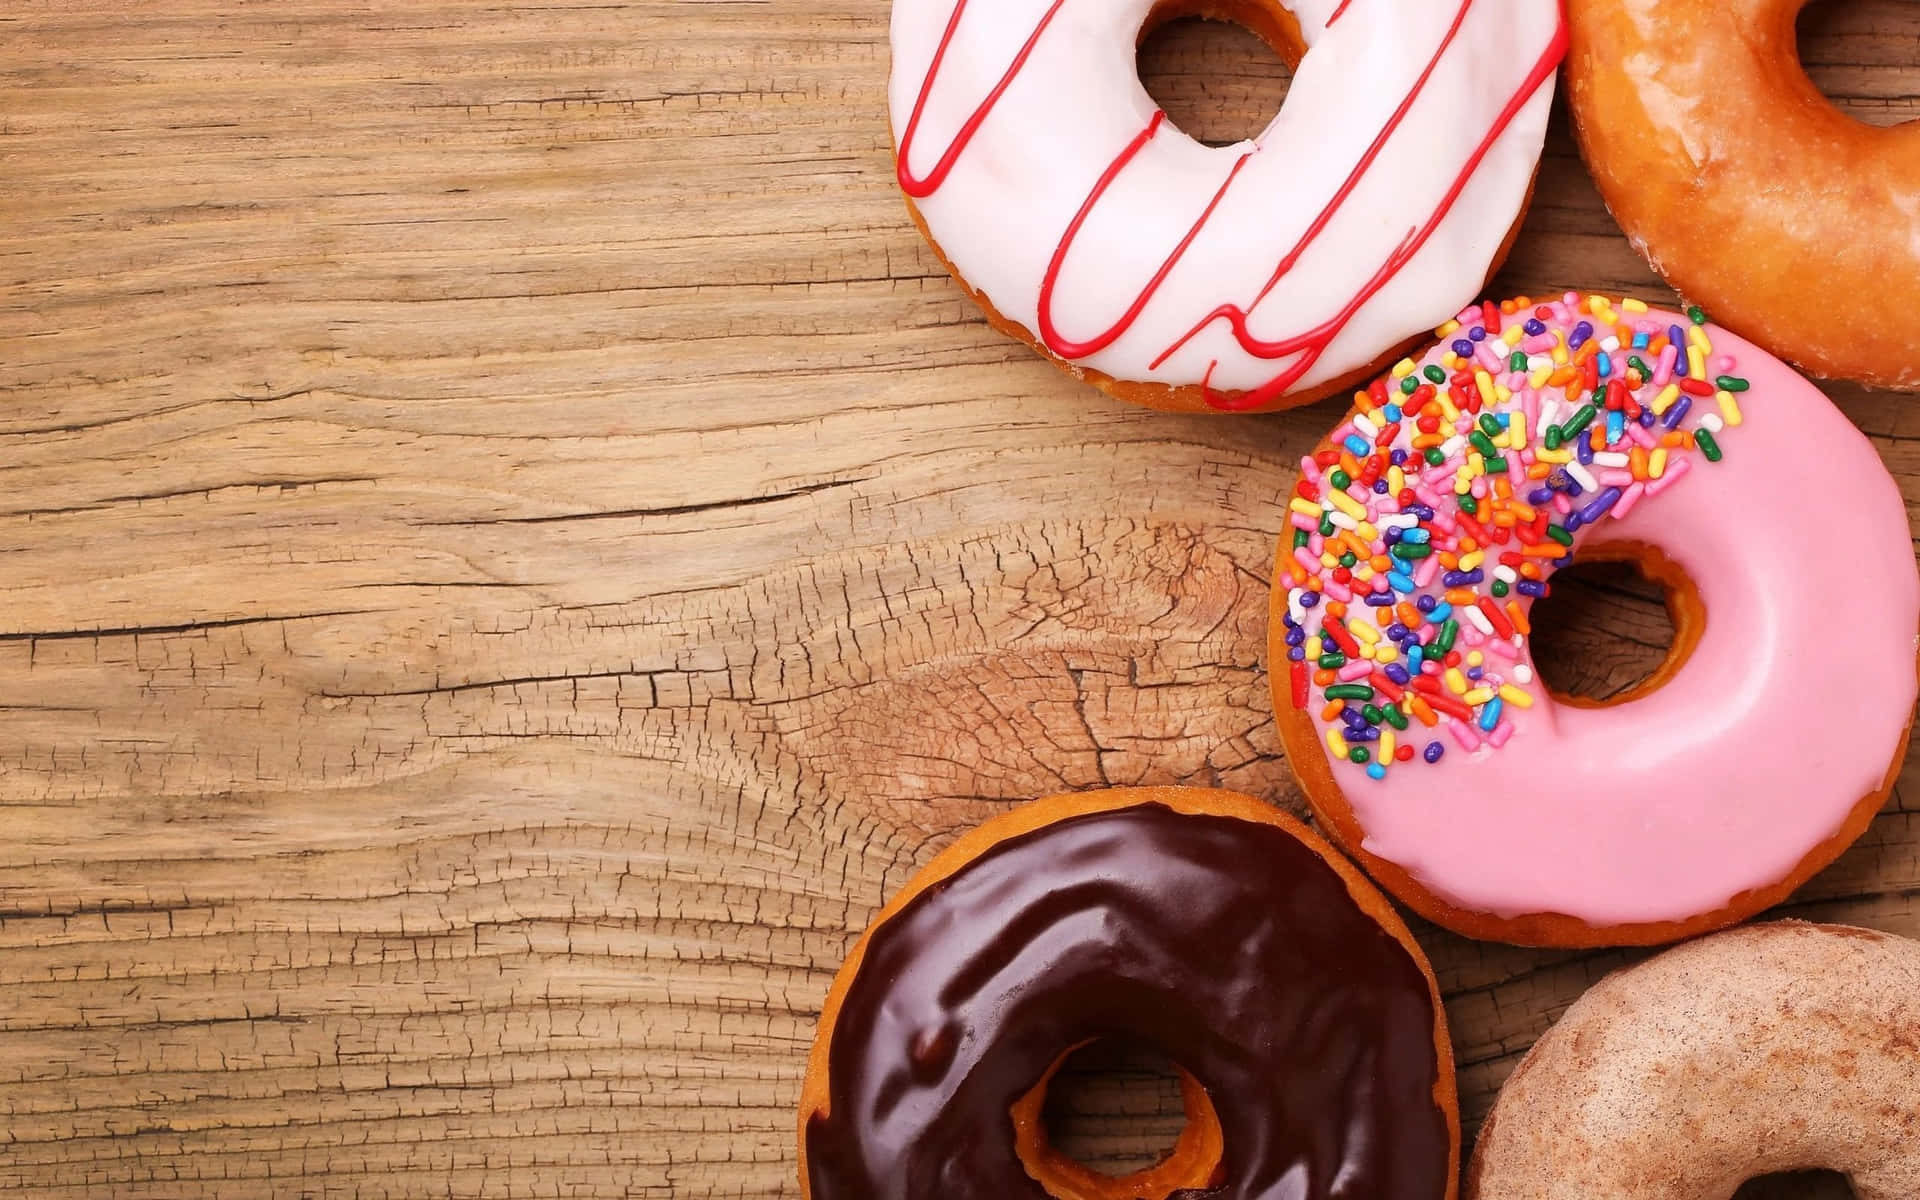 Genießejeden Tag Den Köstlichen Kaffee Und Die Leckeren Leckereien Von Dunkin Donuts!